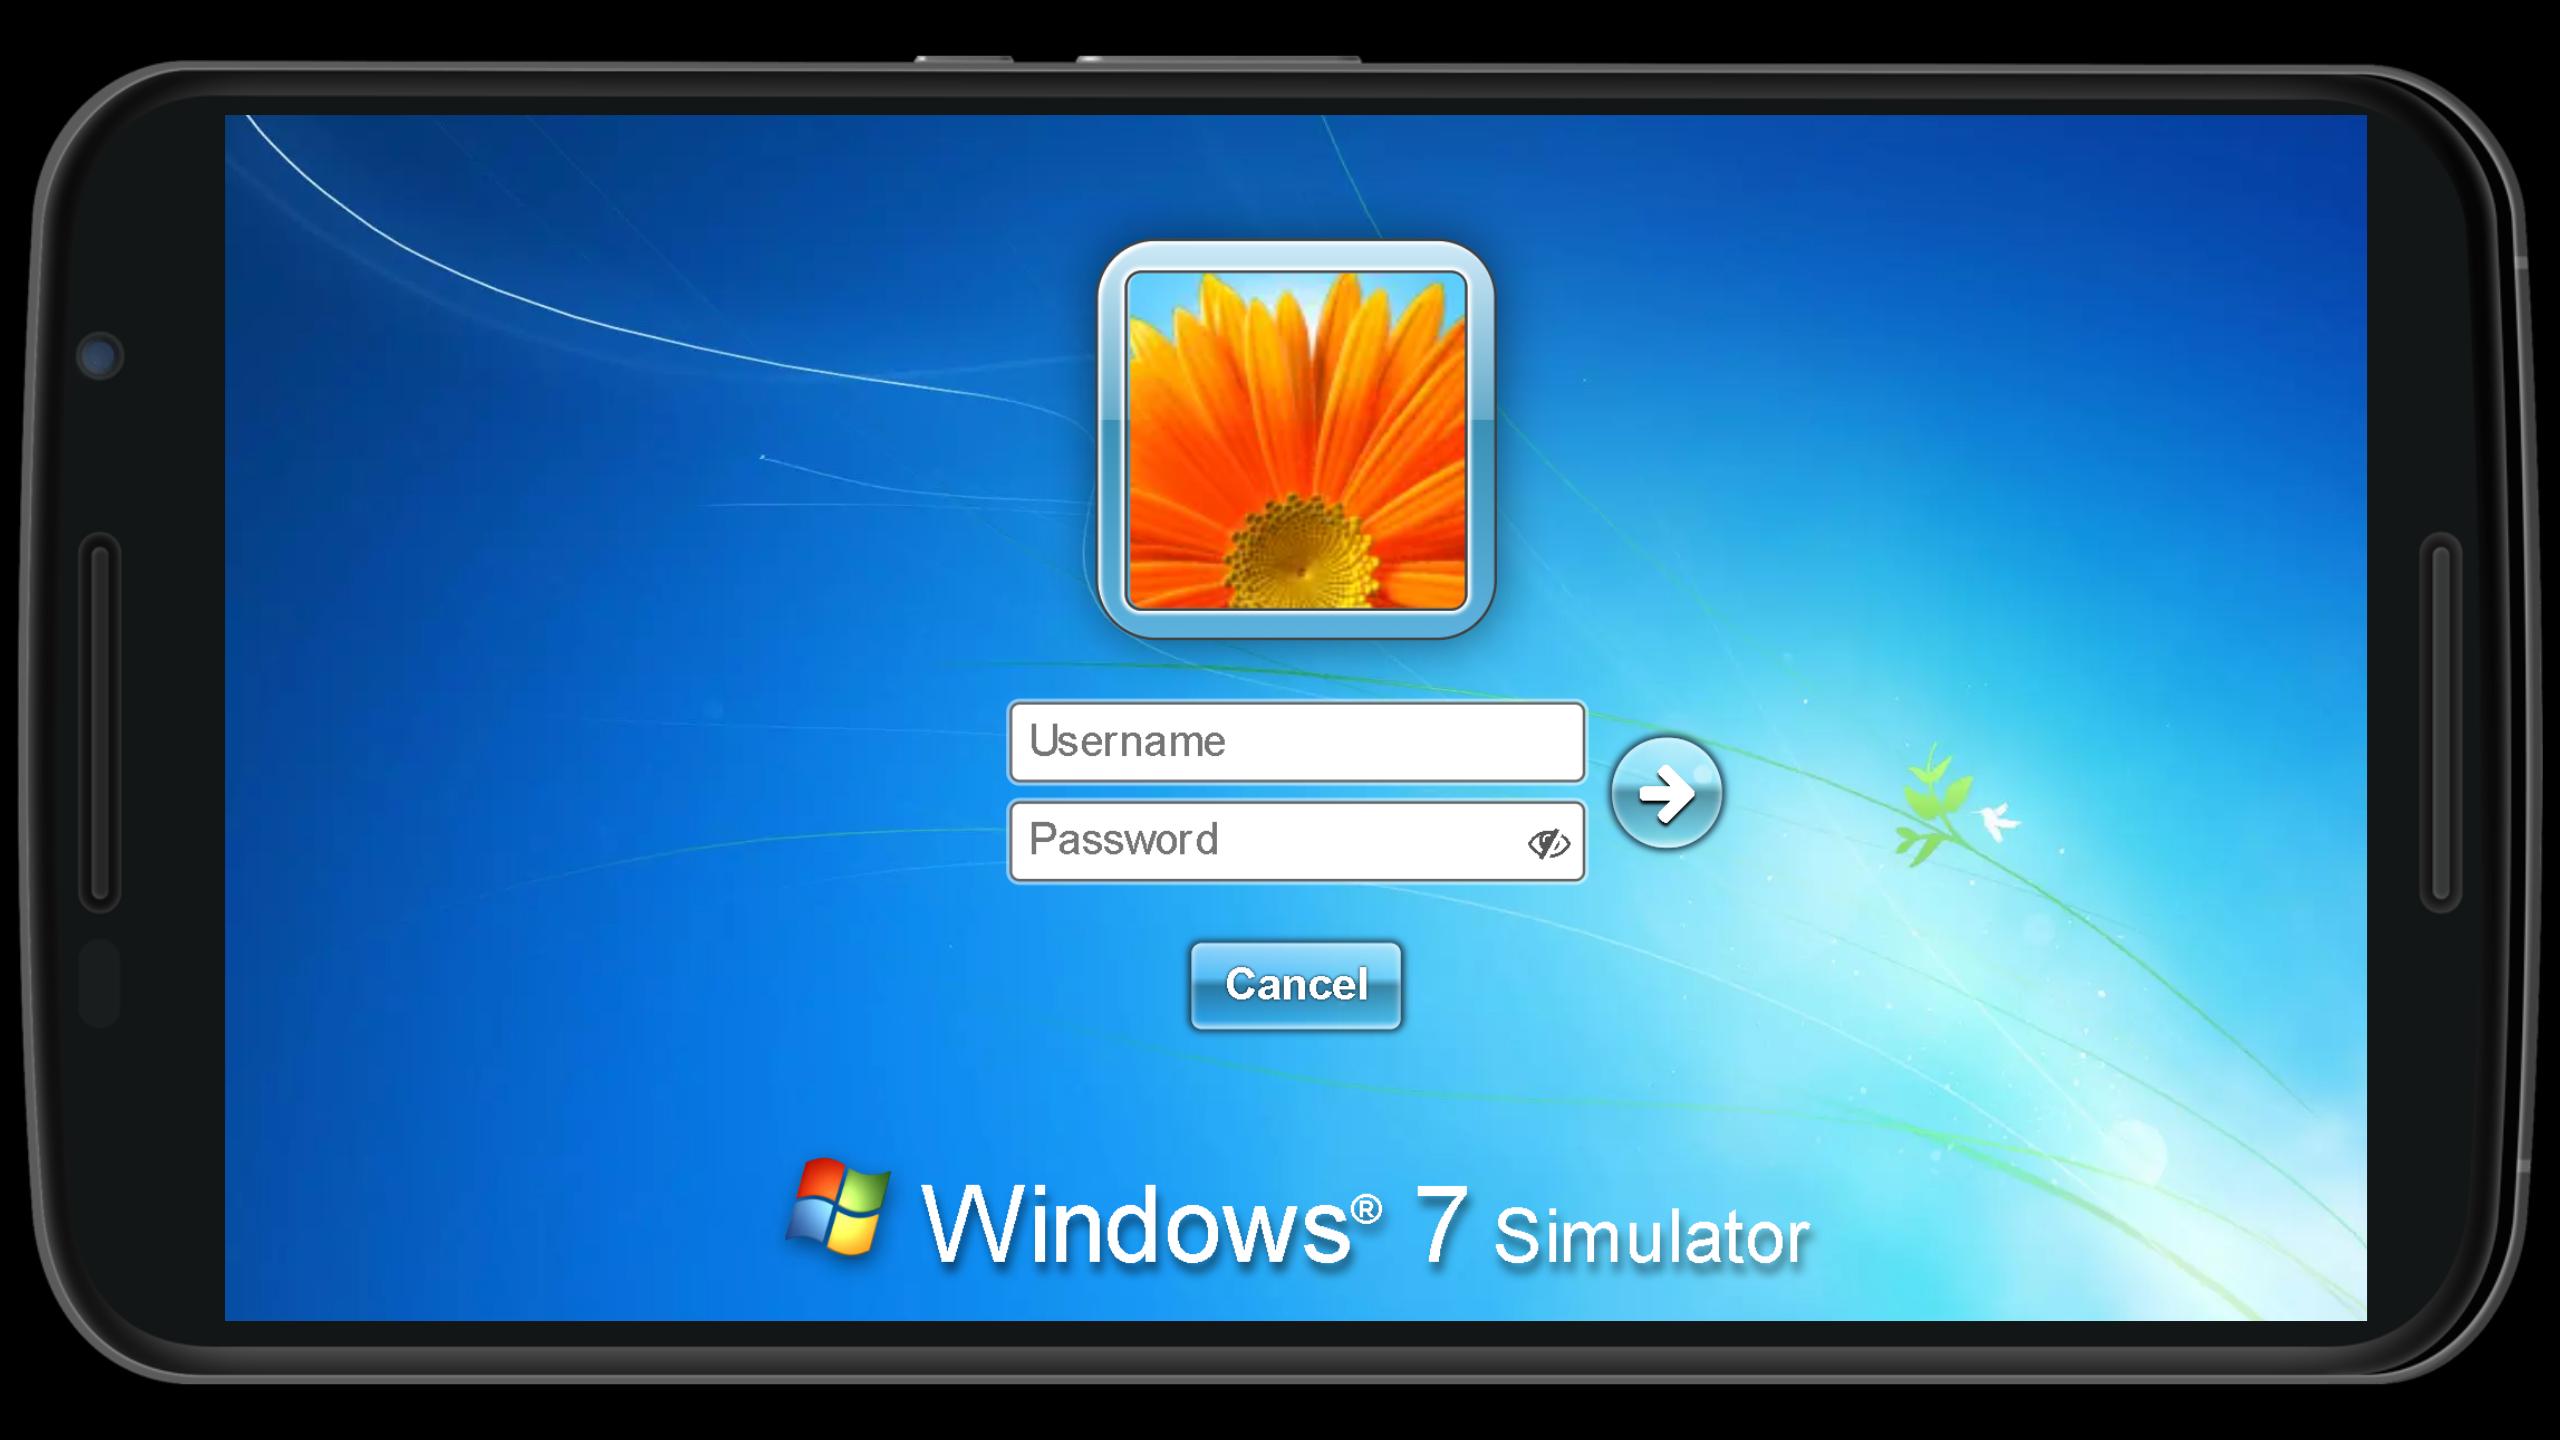 Apk downloader software for windows 7